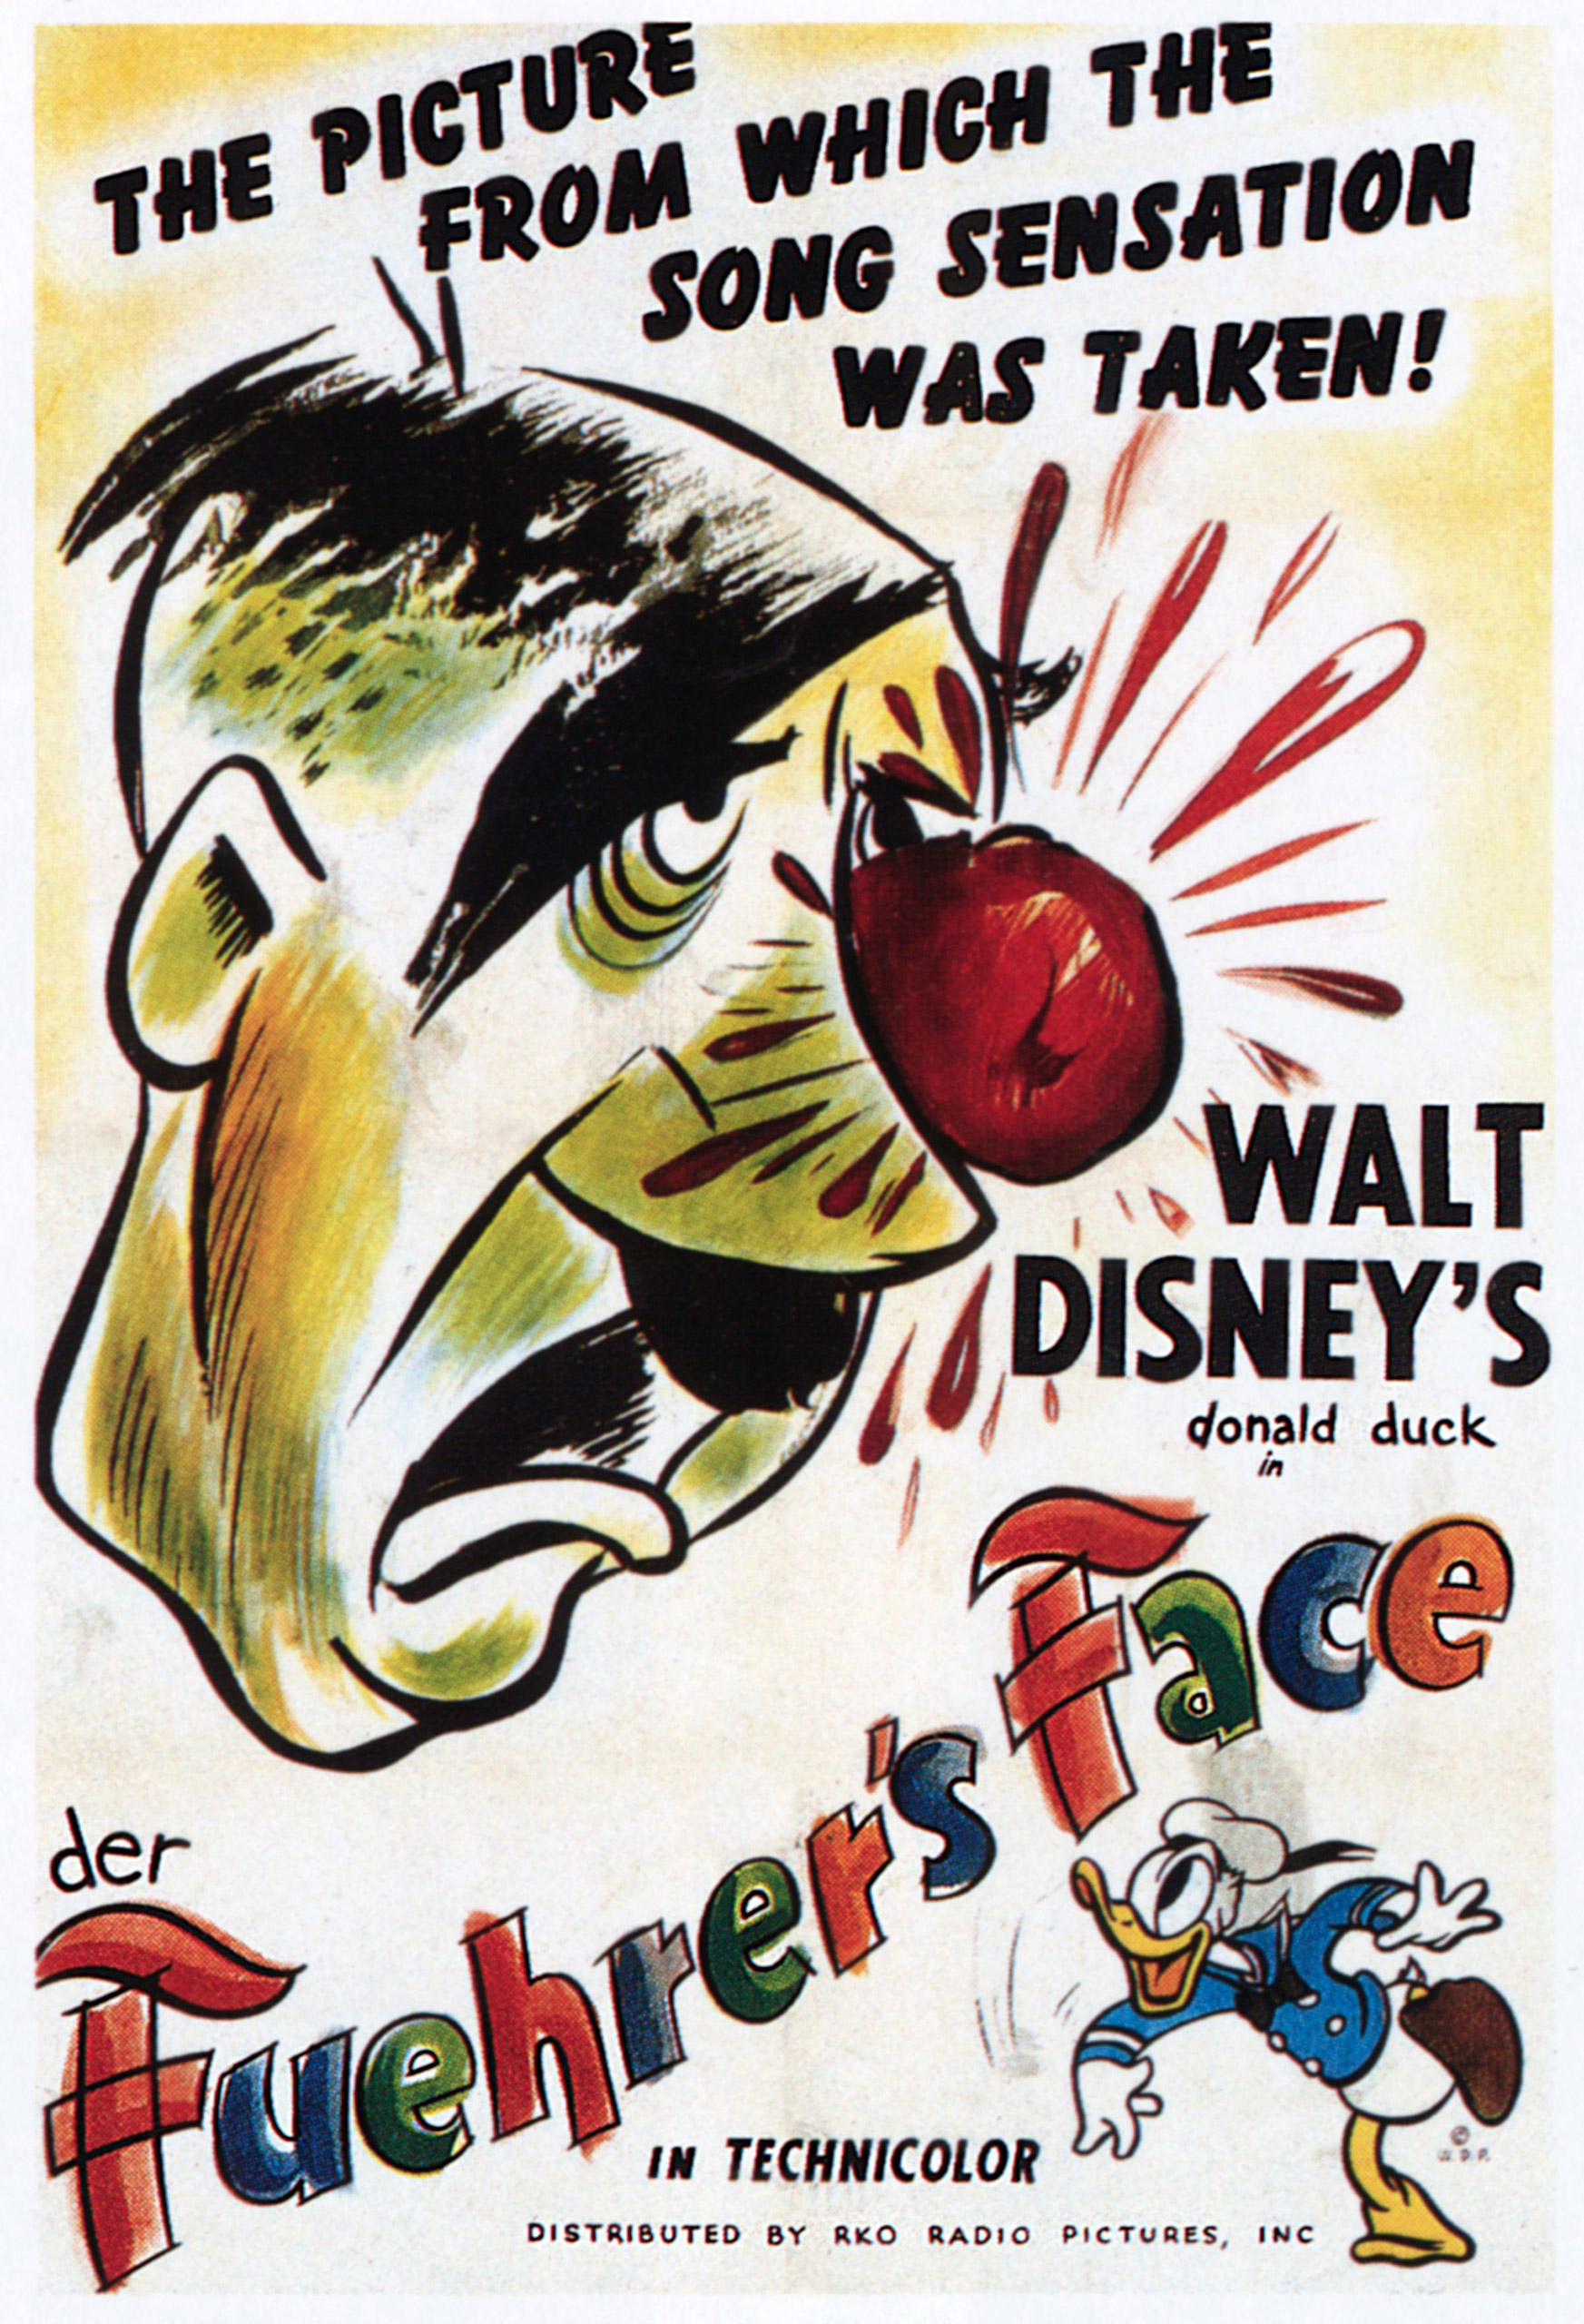 "DER FUEHRER'S FACE," Hitler, Donald Duck, Walt Disney's Oscar-winning short subject, 1943.